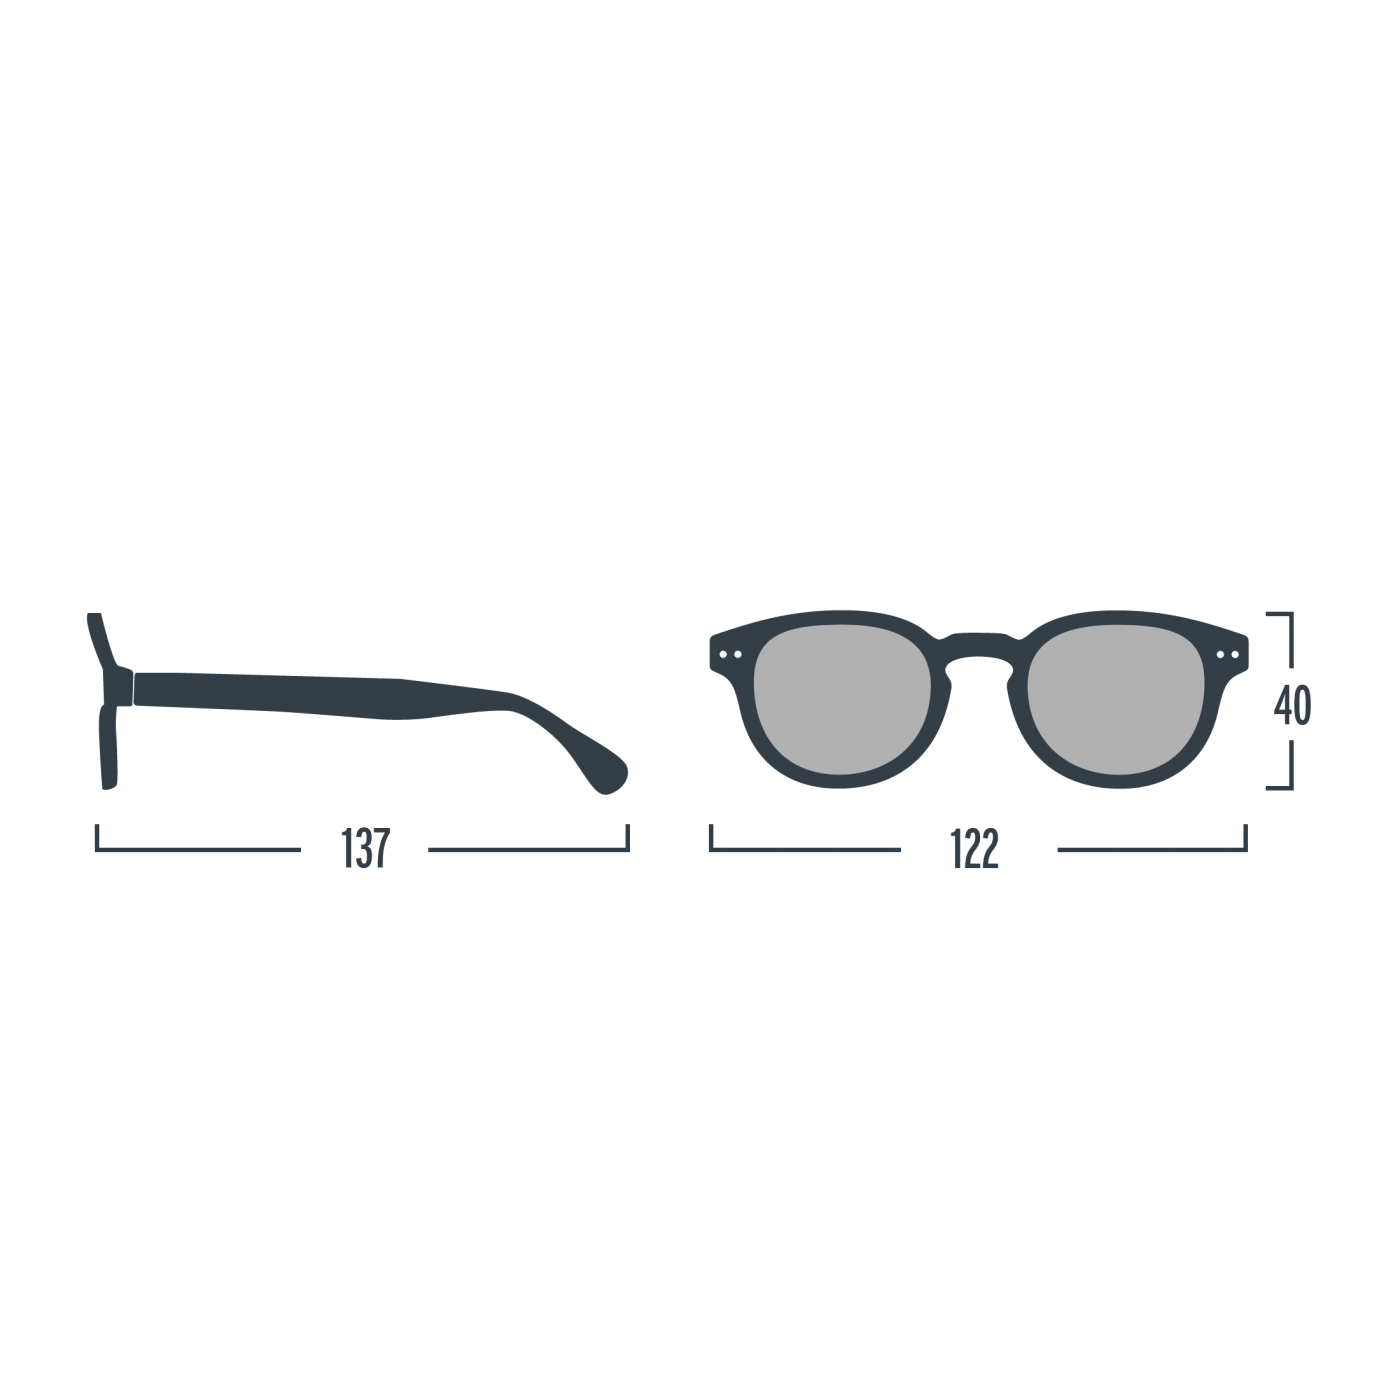 Óculos de Sol Black #D para crianças dos 5 aos 10 anos